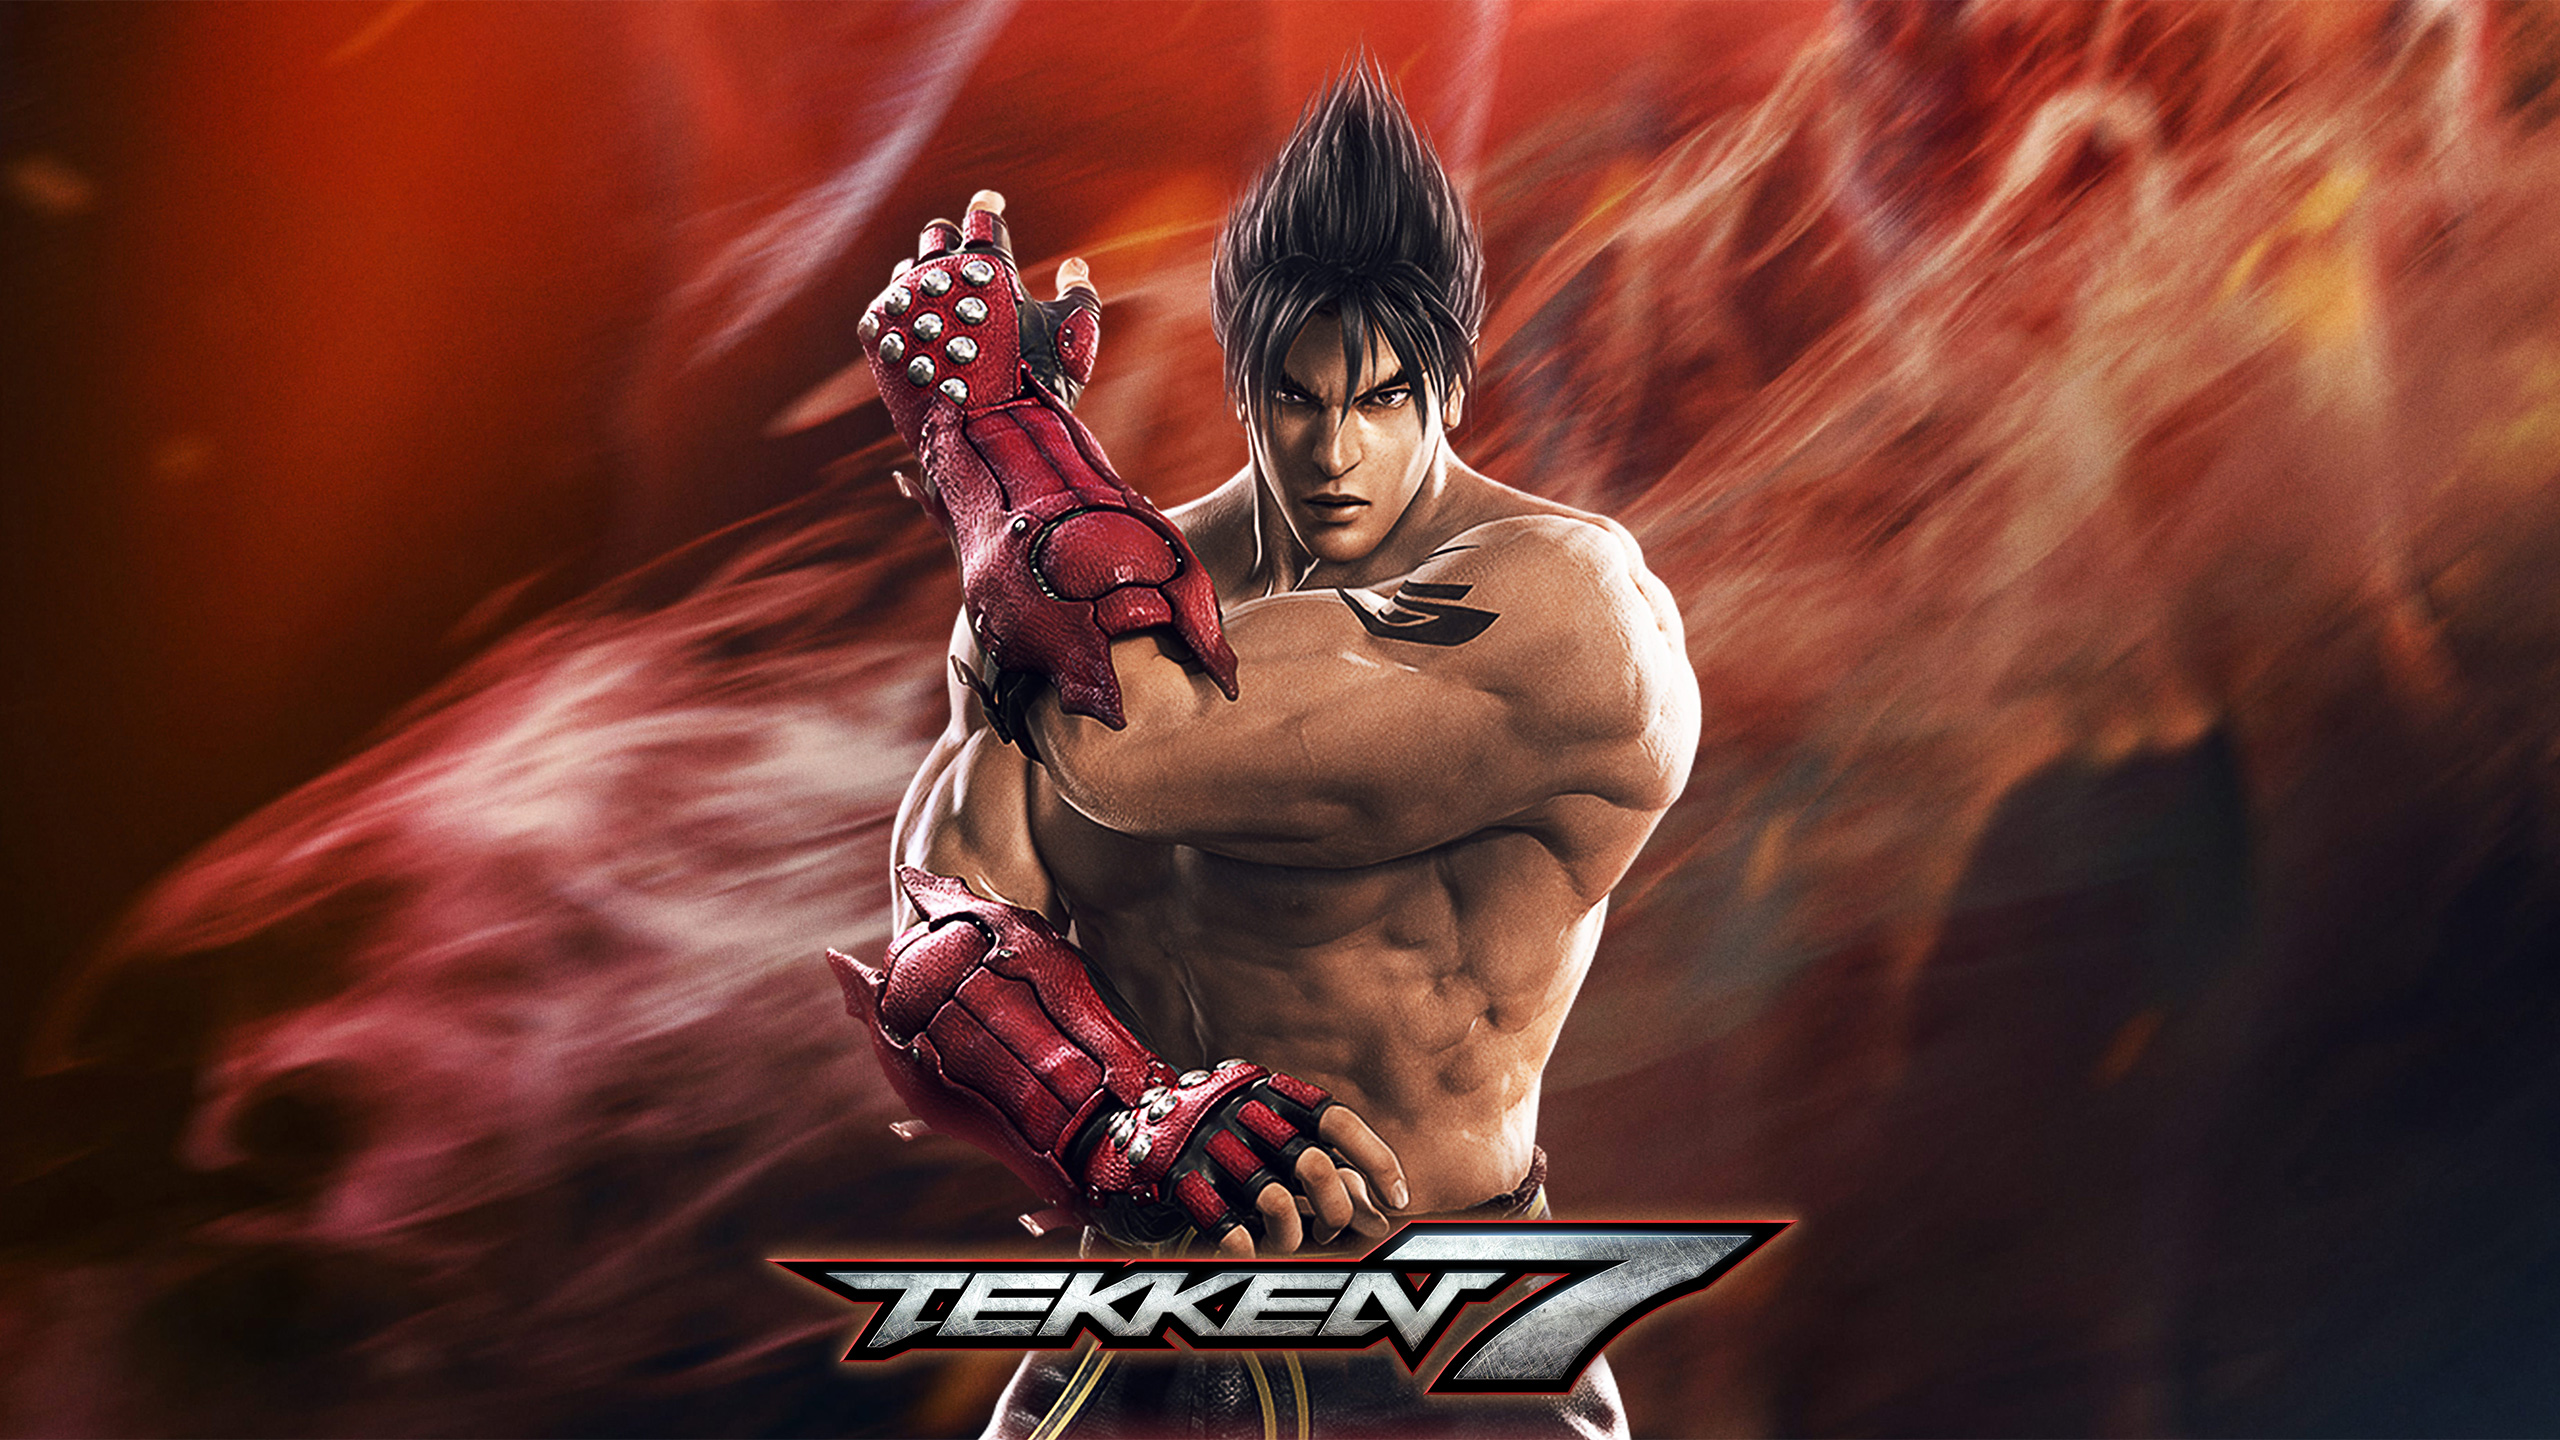 Game Tekken Jin Kazama Wallpaper